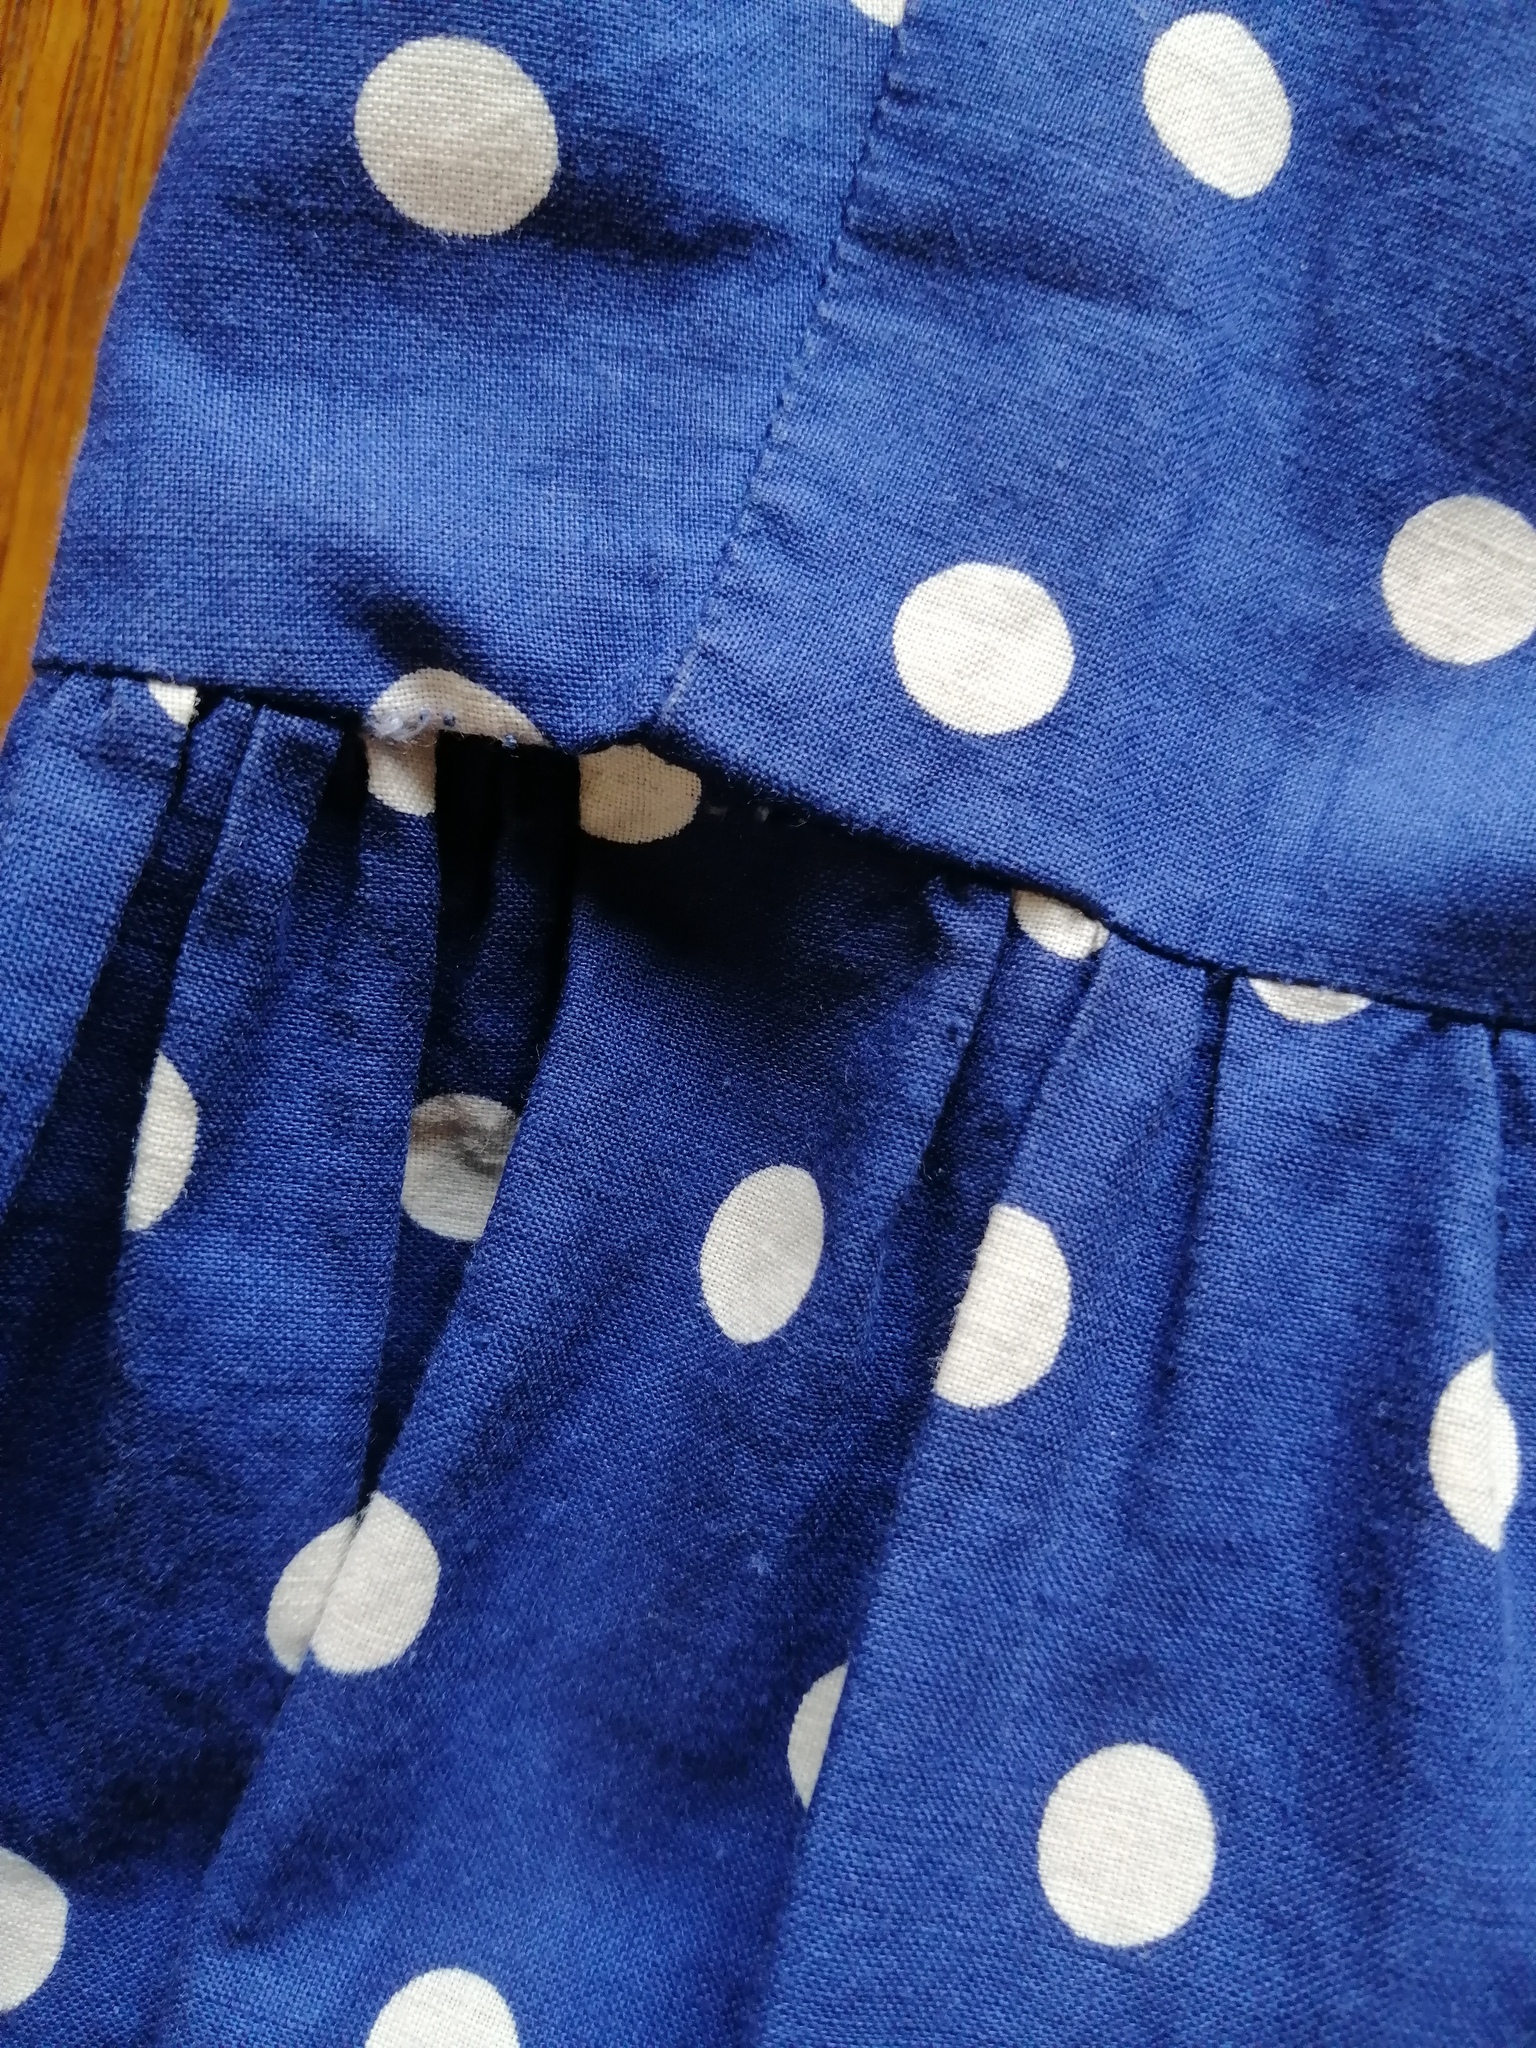 Vintage sommarklänning blå med vita prickar axelband vid kjol 60-tal